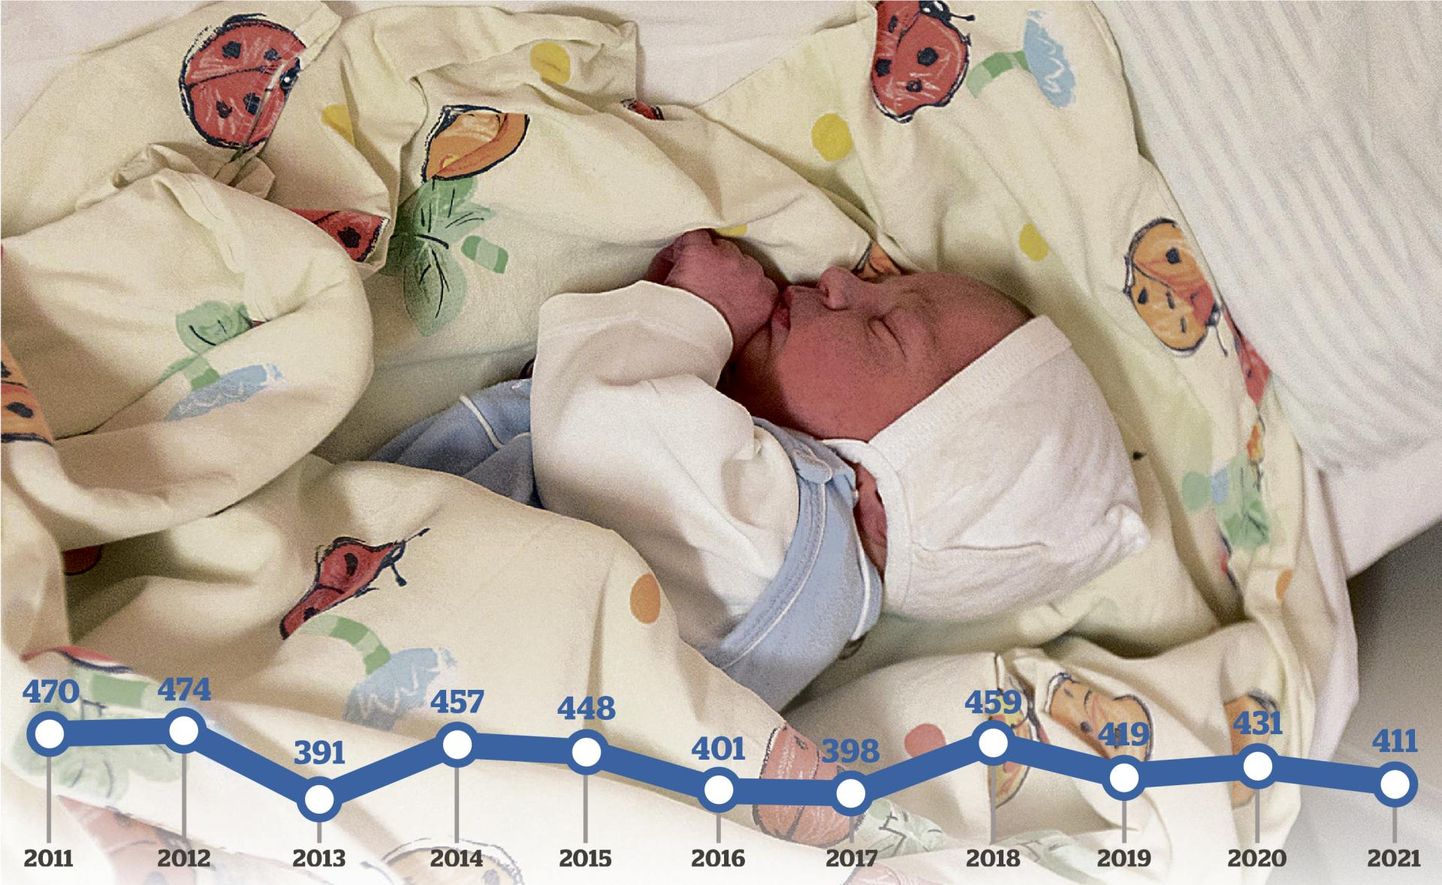 Viljandimaal sündis eelmisel aastal 411 last. Kui keskmiselt sündis mullu iga kuu 30-40 last, siis aprillis oli maakonna sündimus äärmiselt nigel – 14 last.